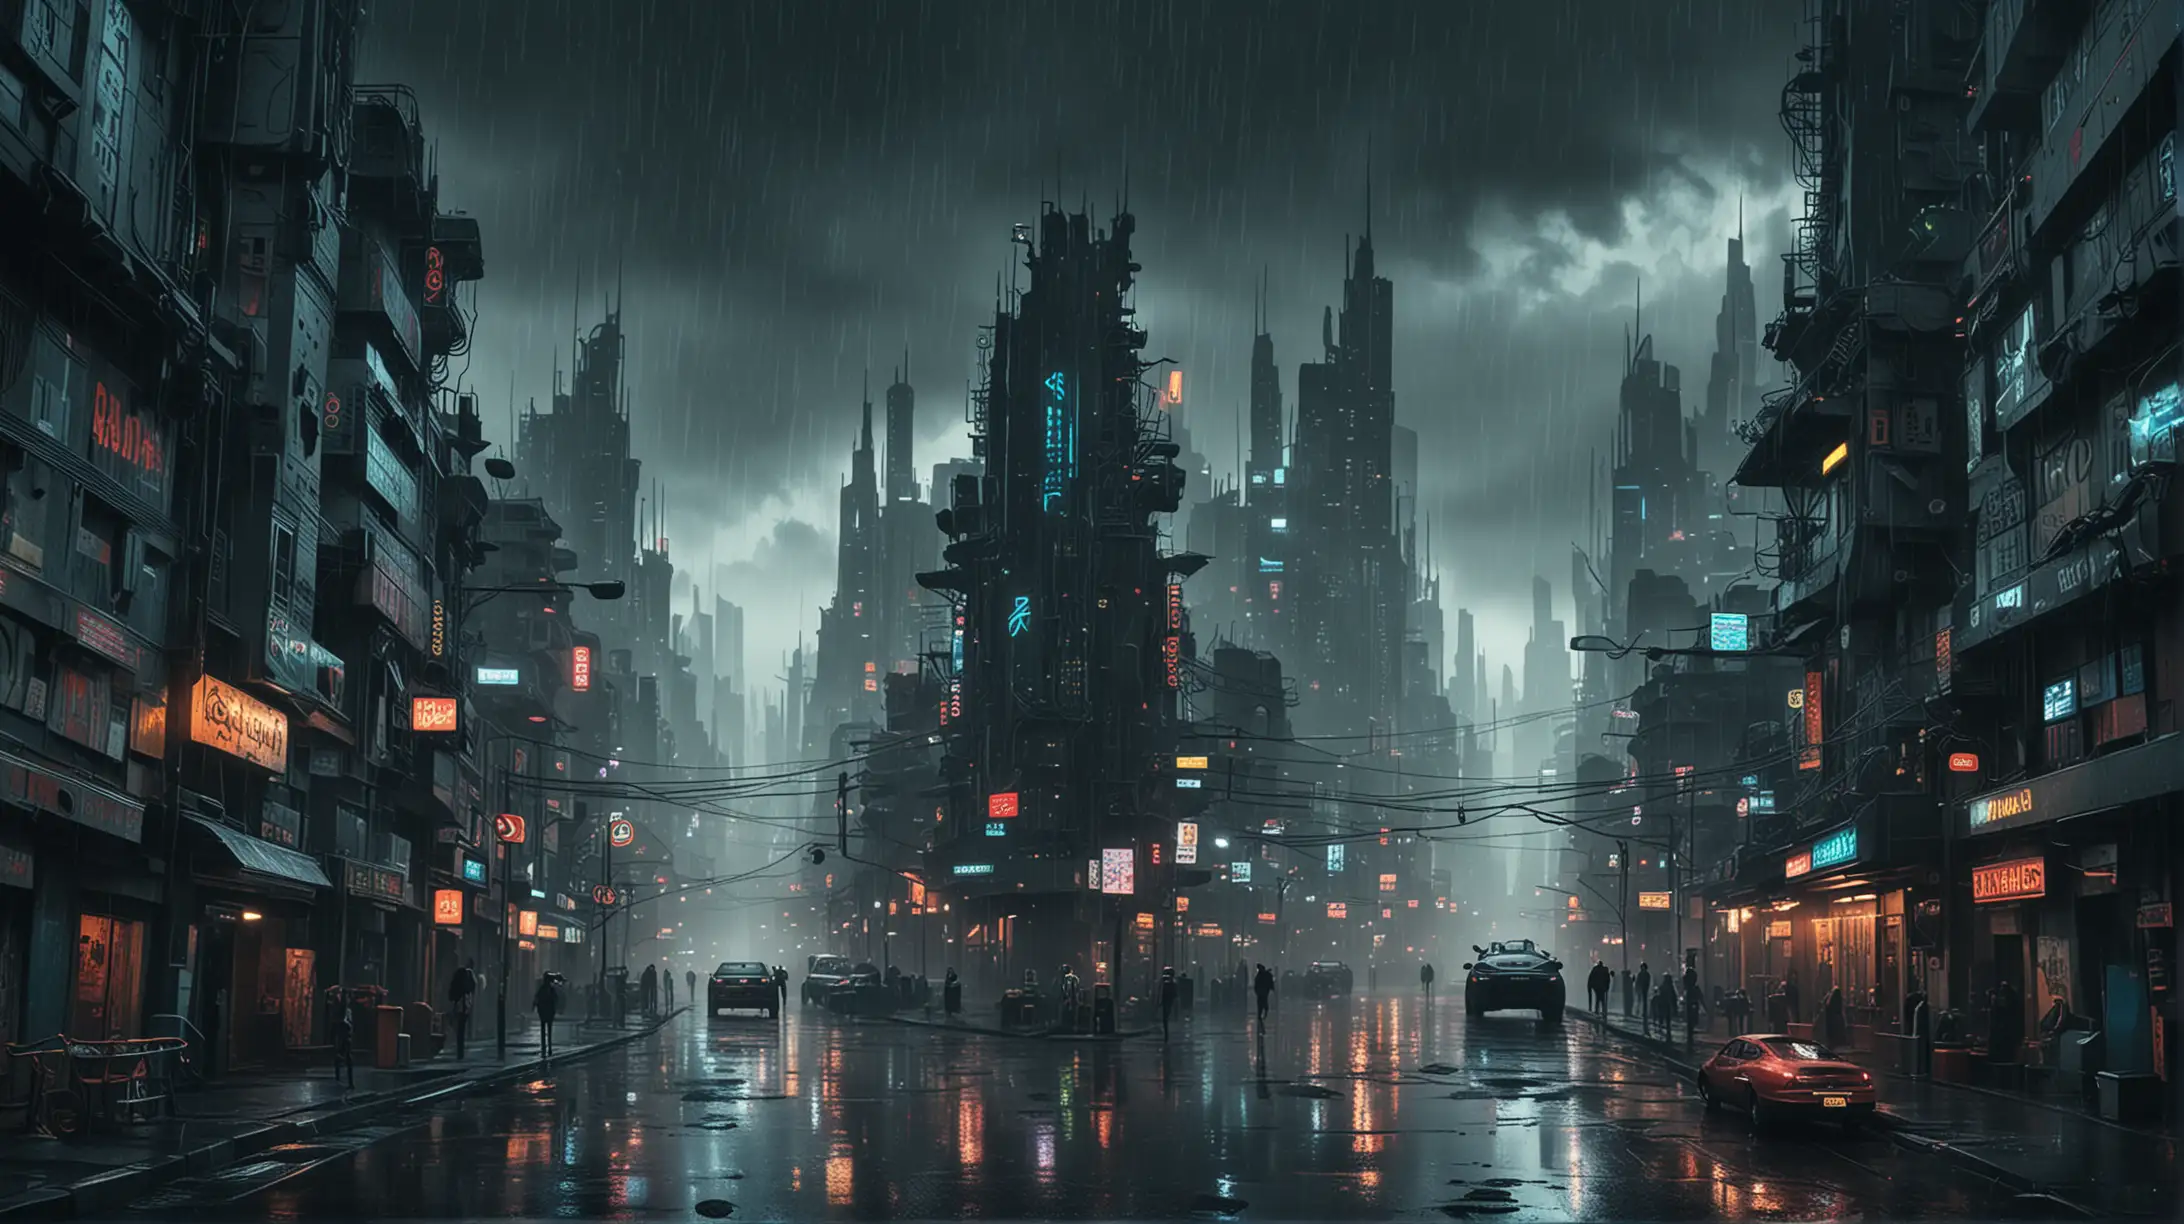 Futuristic Psychedelic Cityscape in Dark Fog and Rain